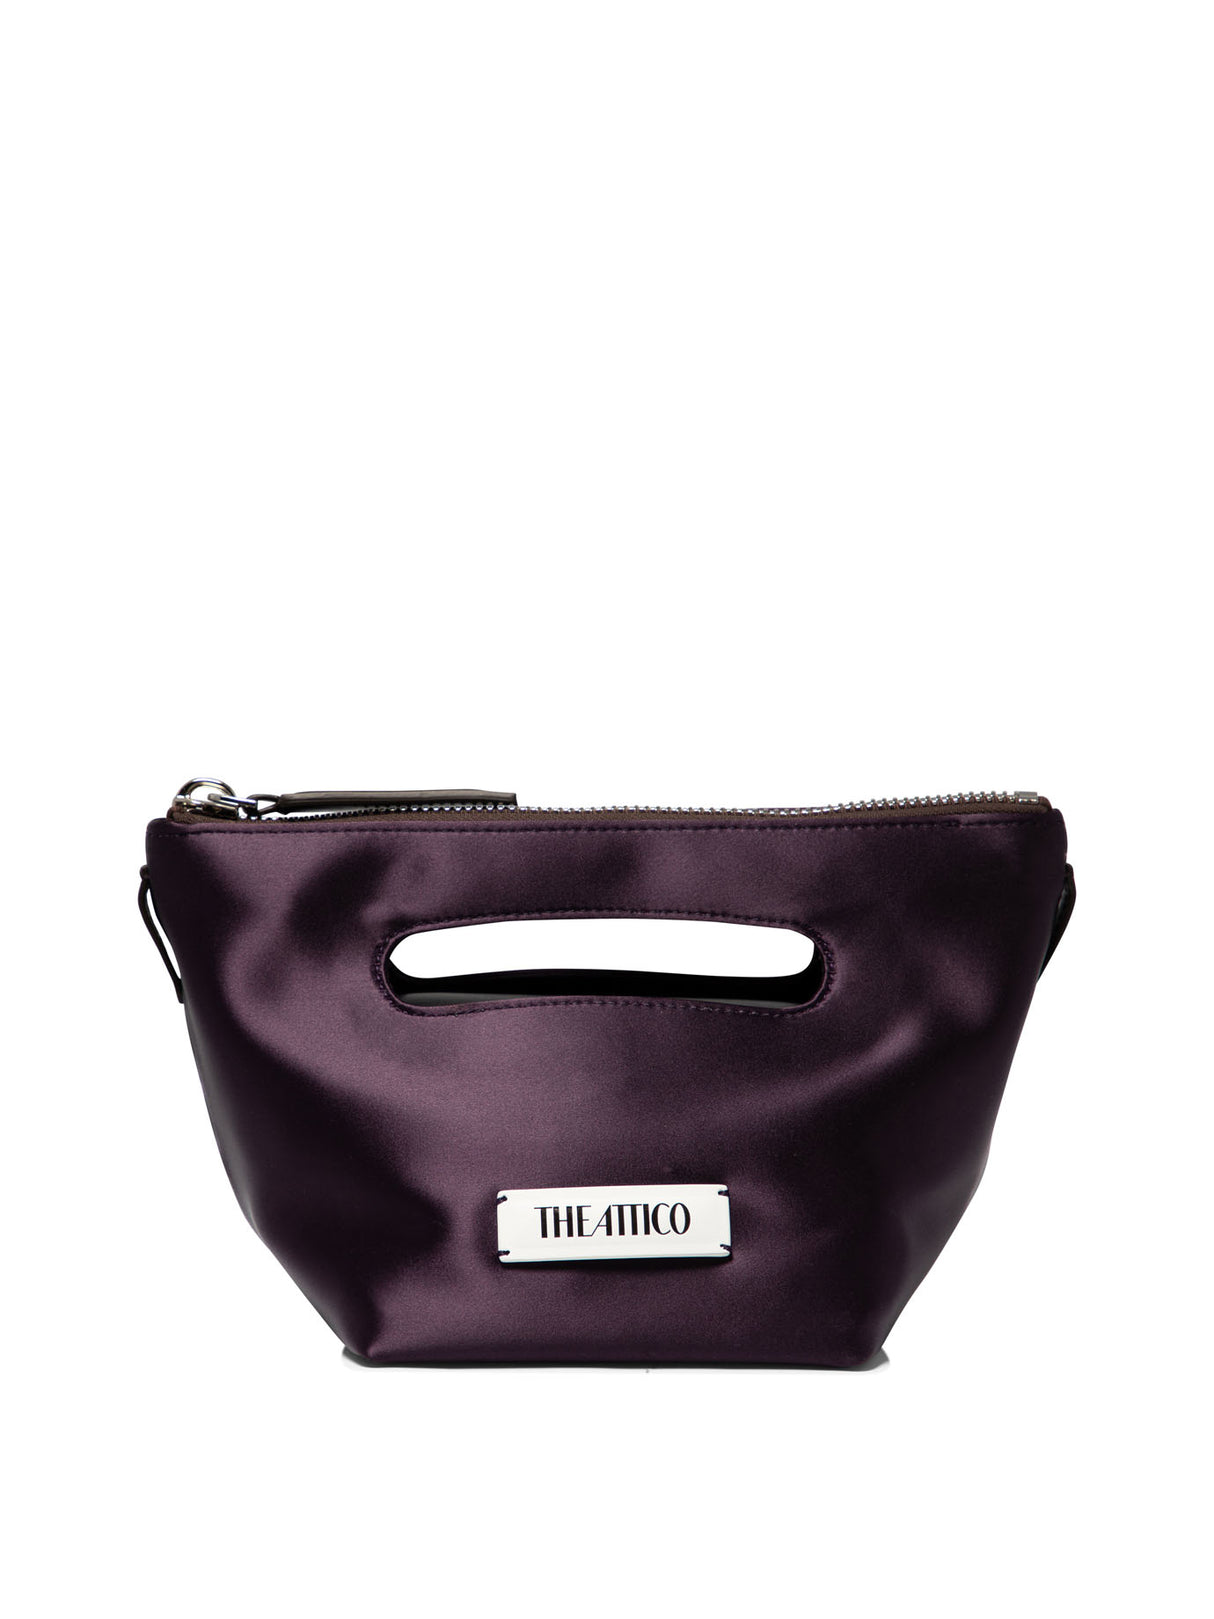 THE ATTICO ''VIA DEI GIARDINI 15'' Tote Handbag Handbag